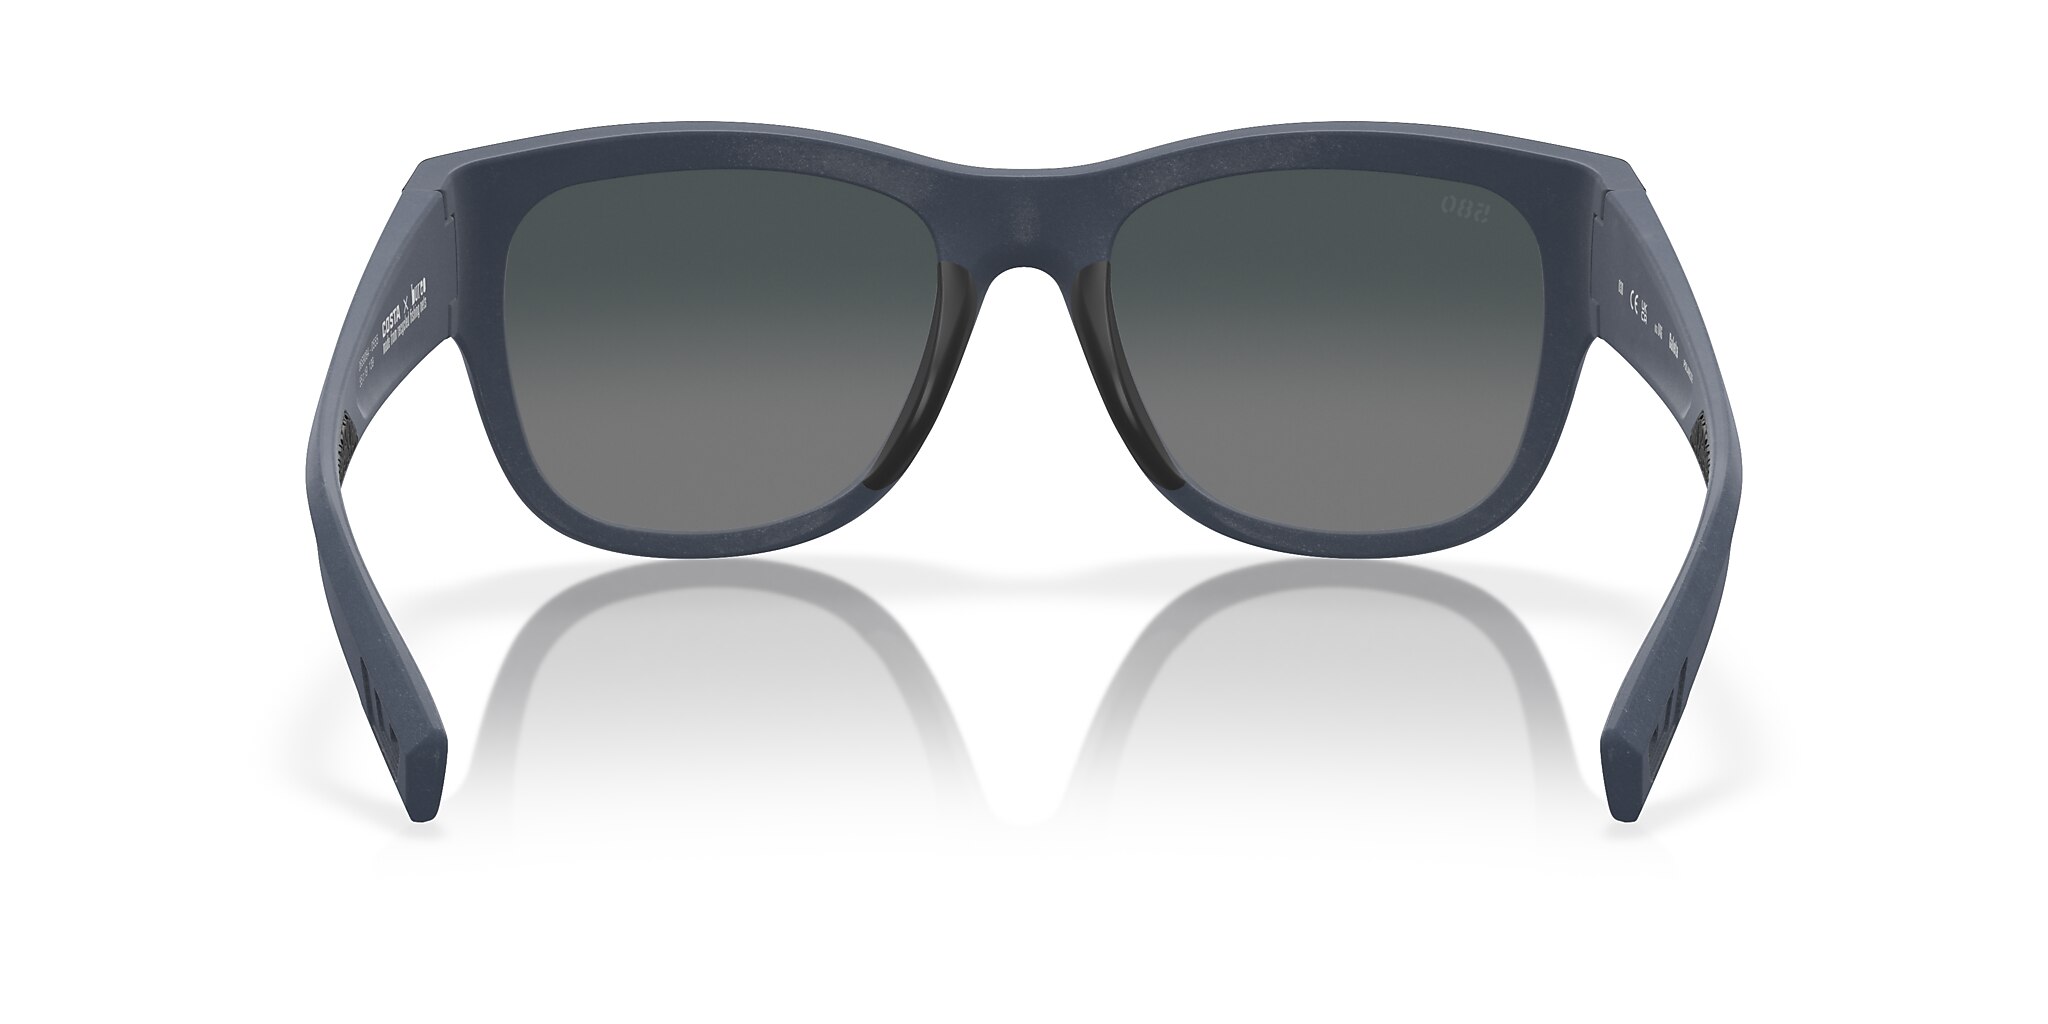 Caleta Polarized Sunglasses in Gray Gradient | Costa Del Mar®